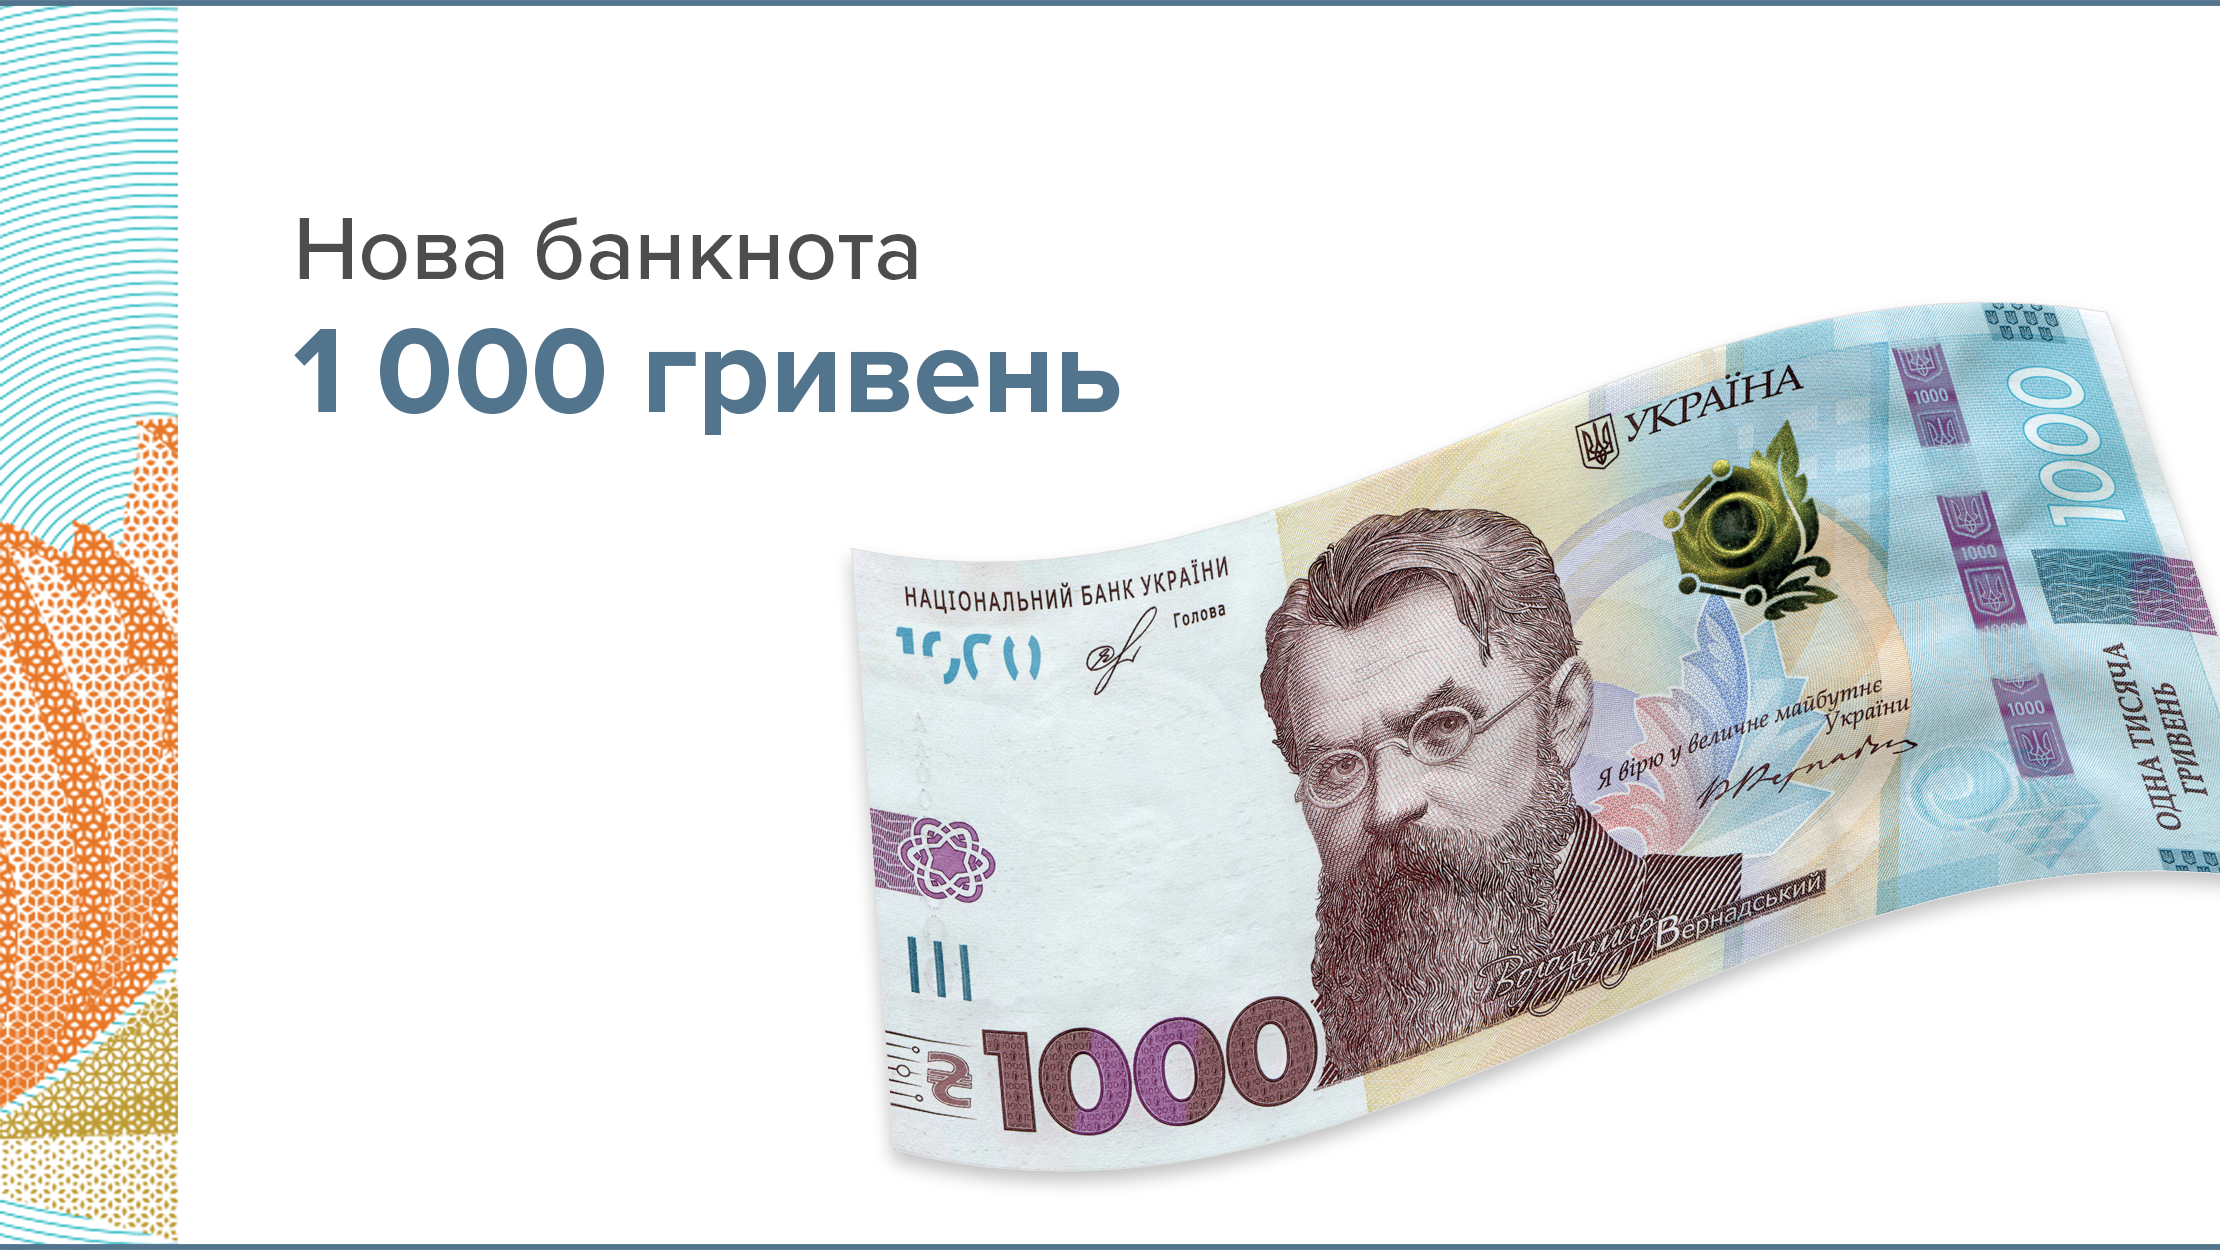 Опис та елементи захисту банкноти номіналом 1000 гривень зразка 2019 року